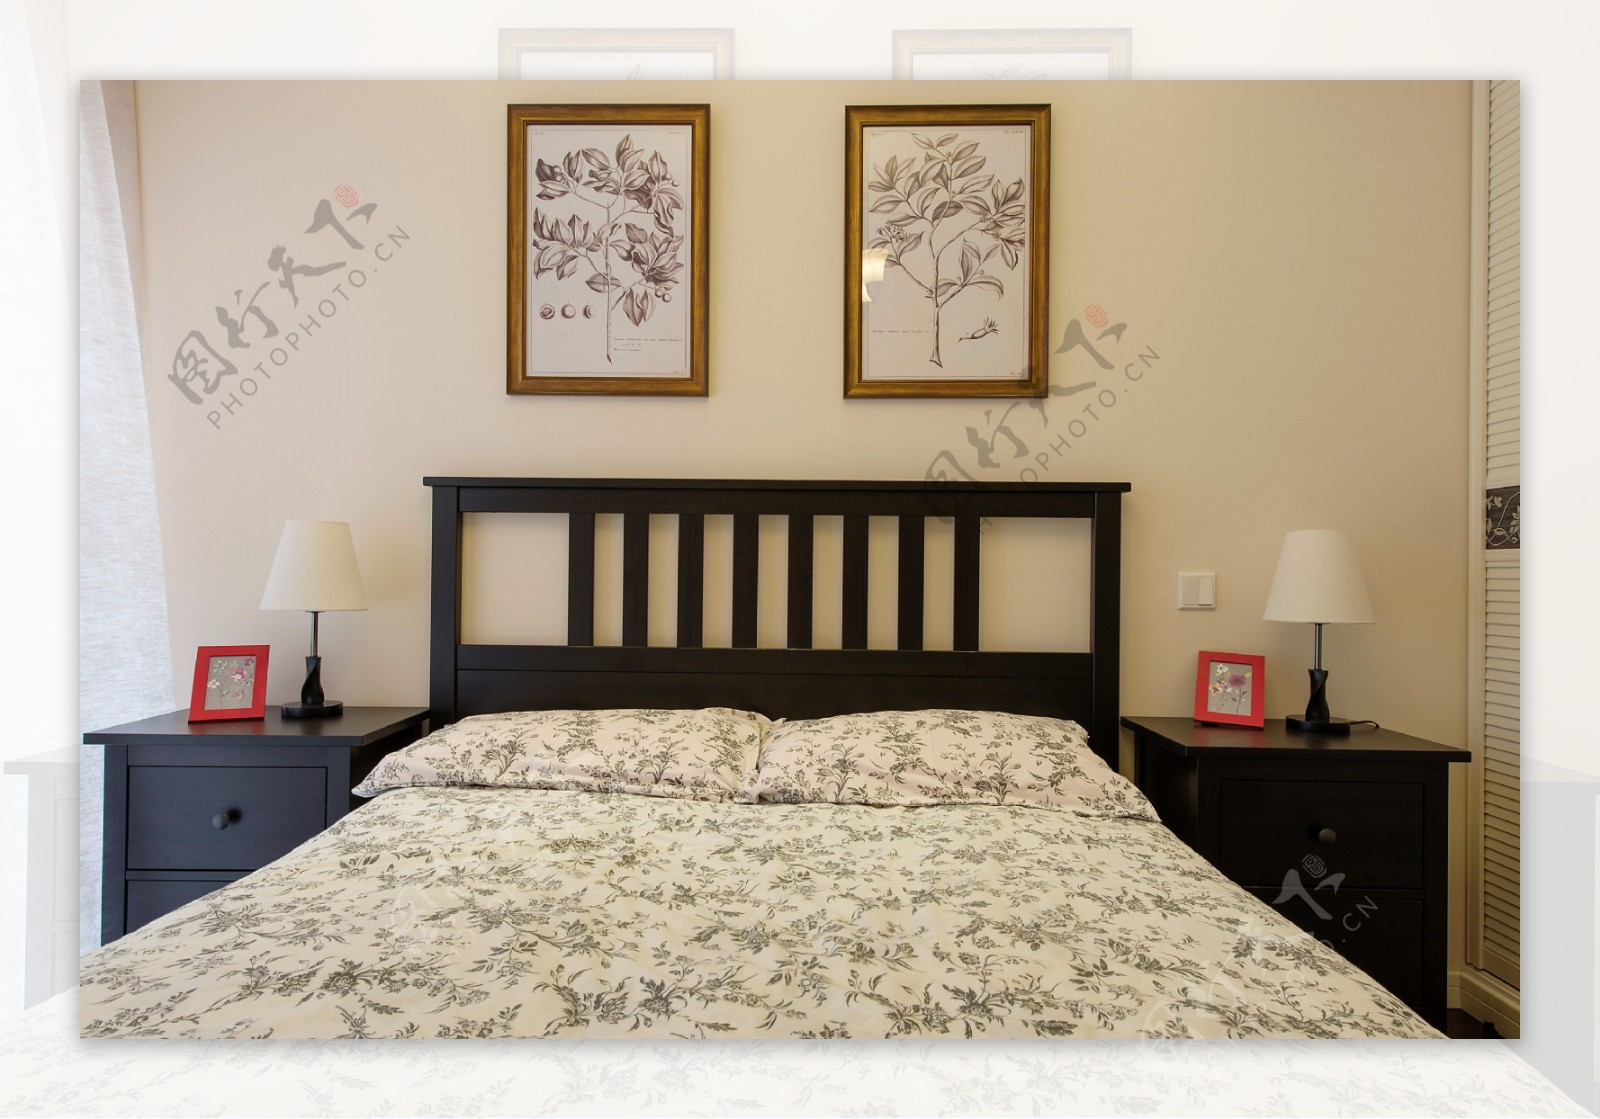 美式古典卧室装修效果图